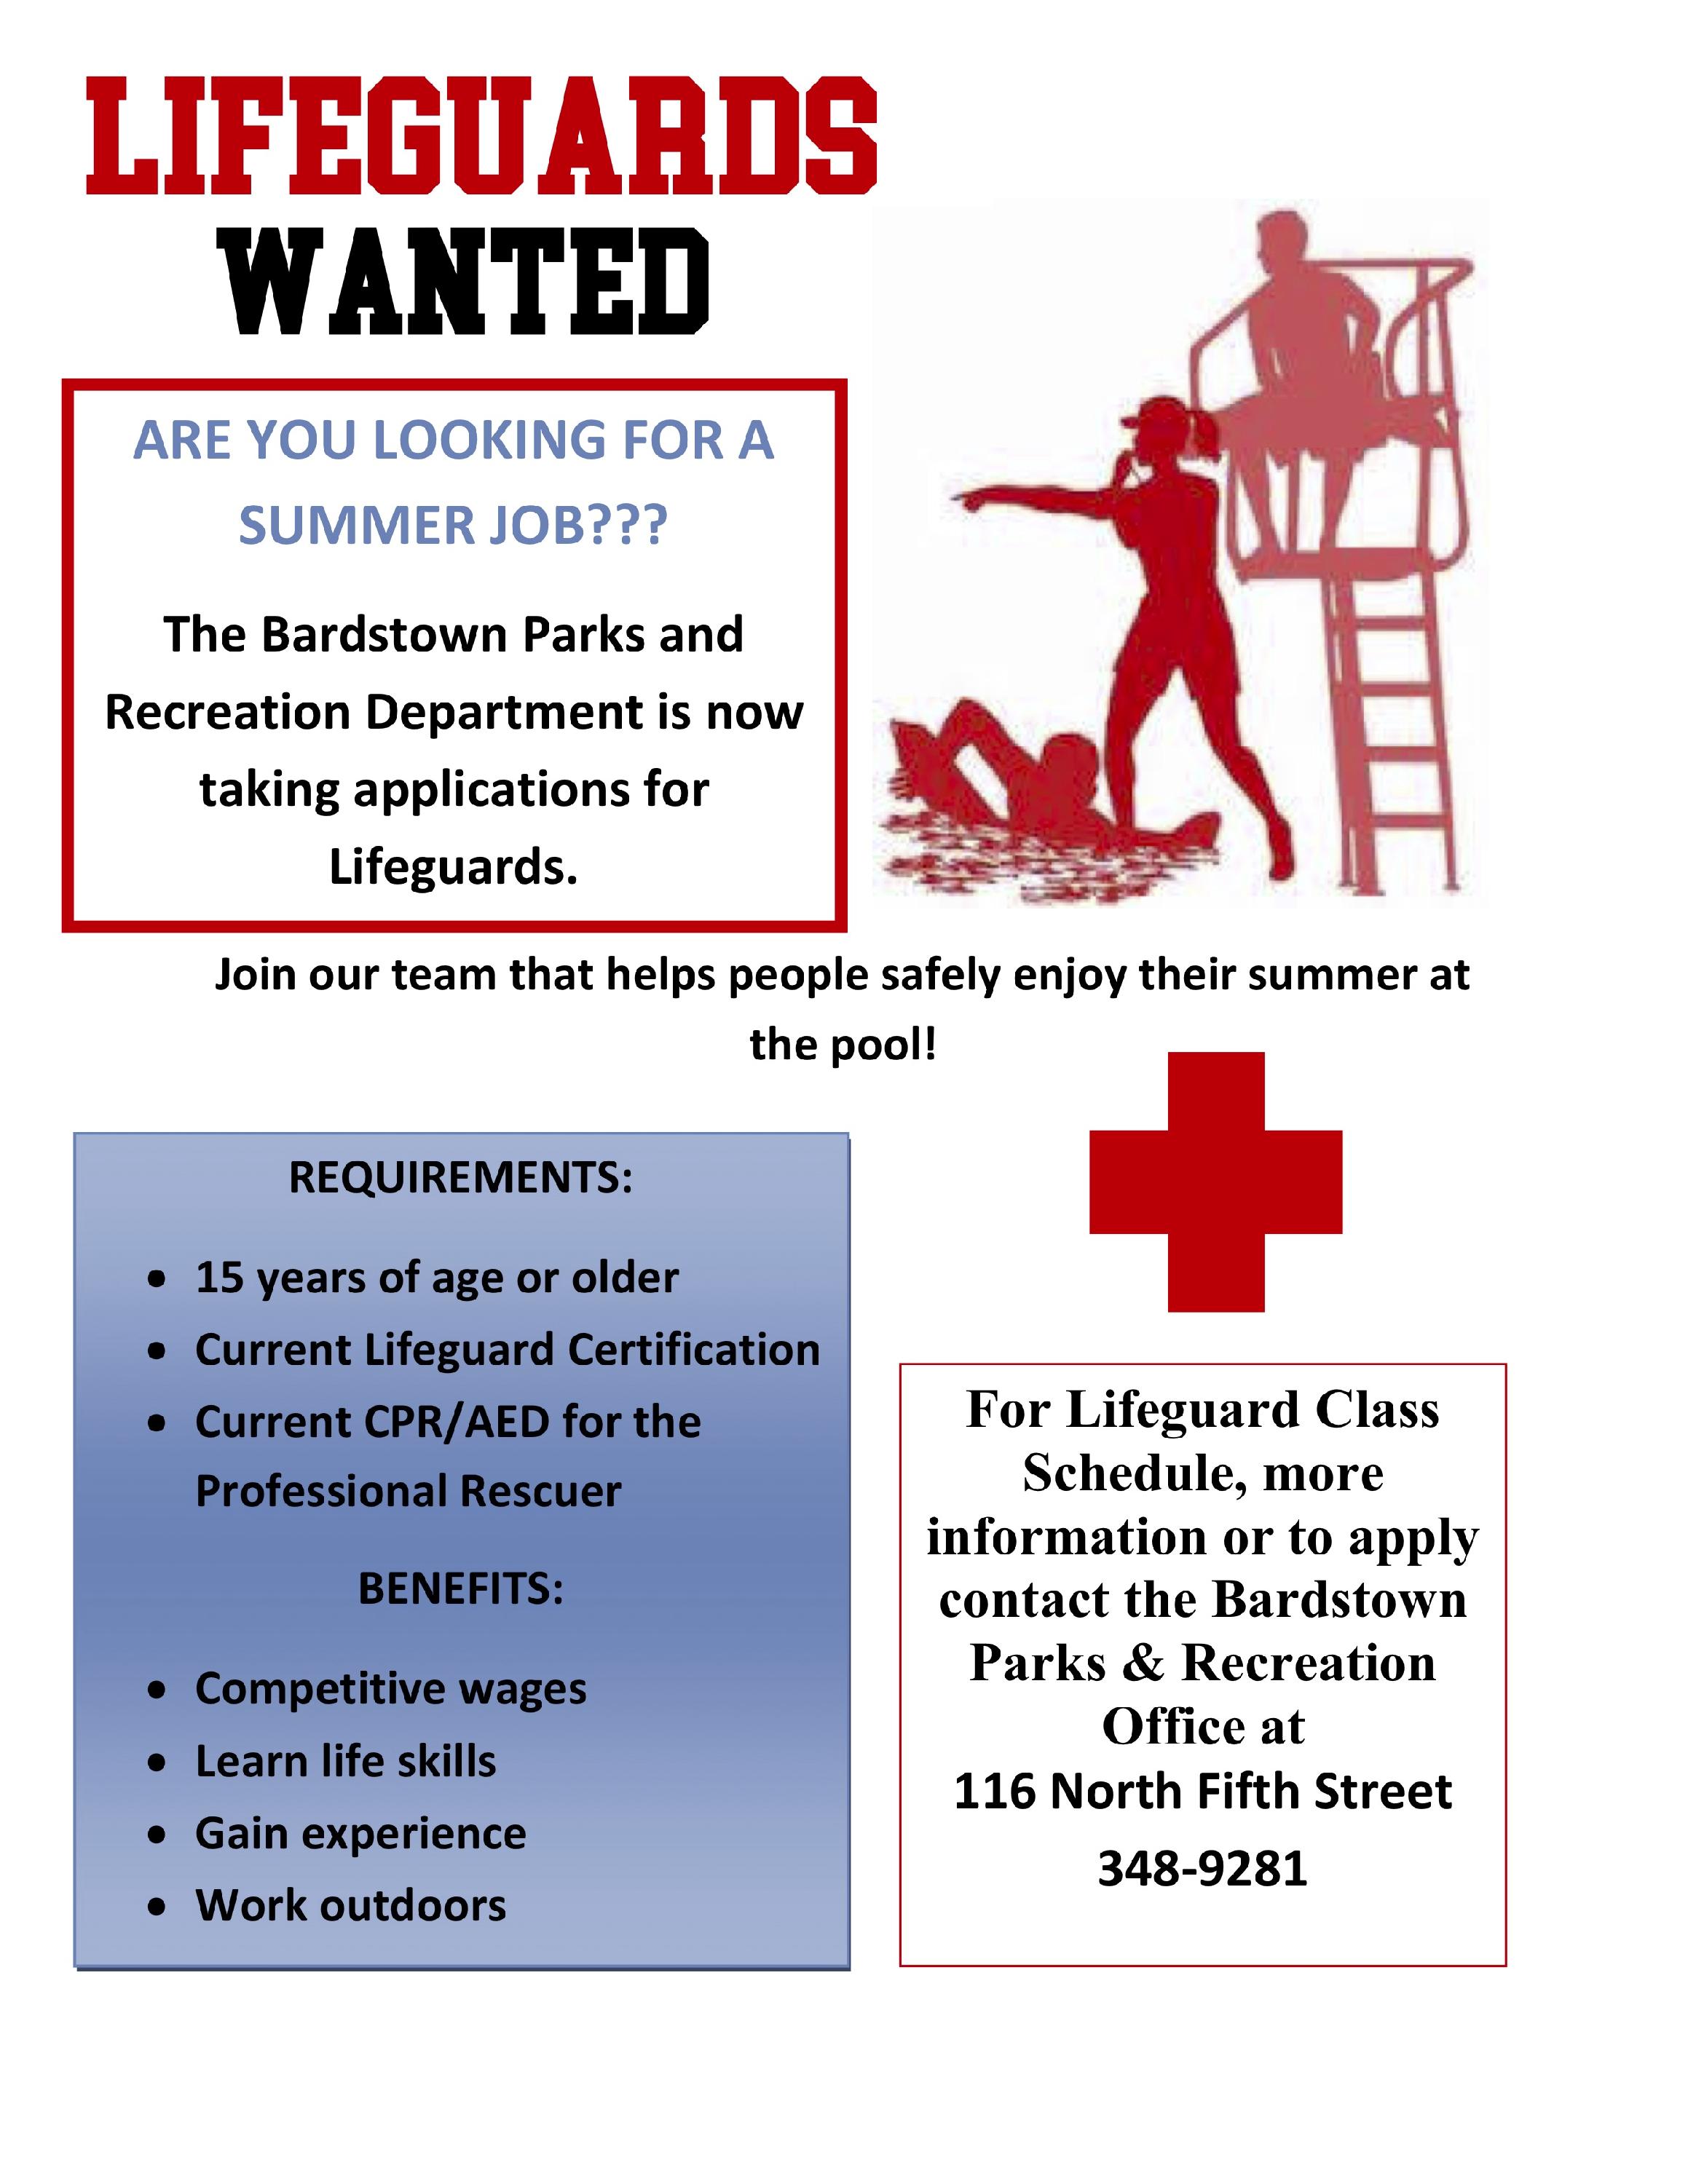 Lifeguards Wanted 2018